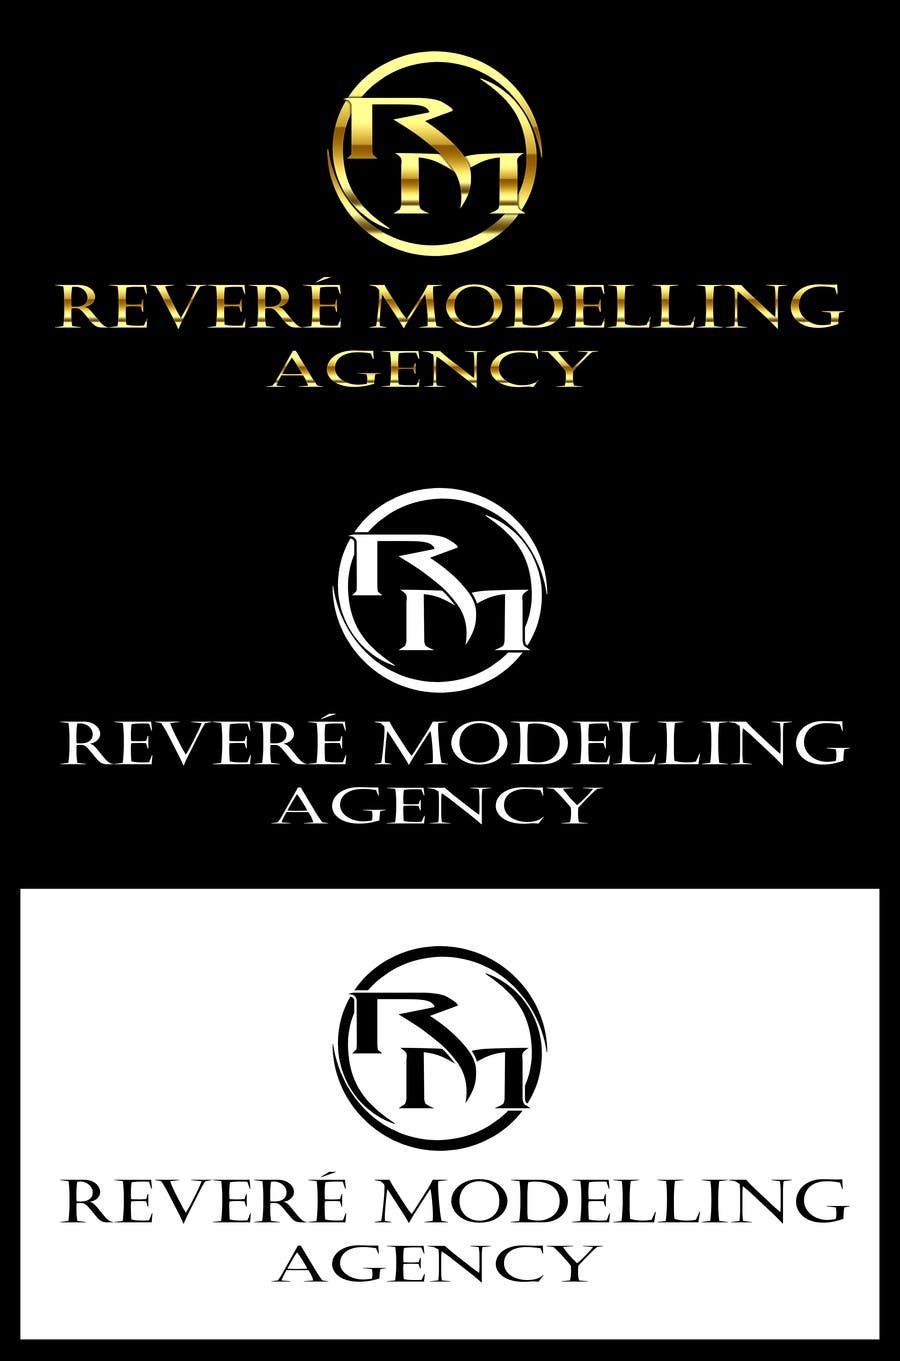 ผลงานการประกวด #12 สำหรับ                                                 Design a Logo for modelling agency in London (will end contest once satisfied with final design)
                                            